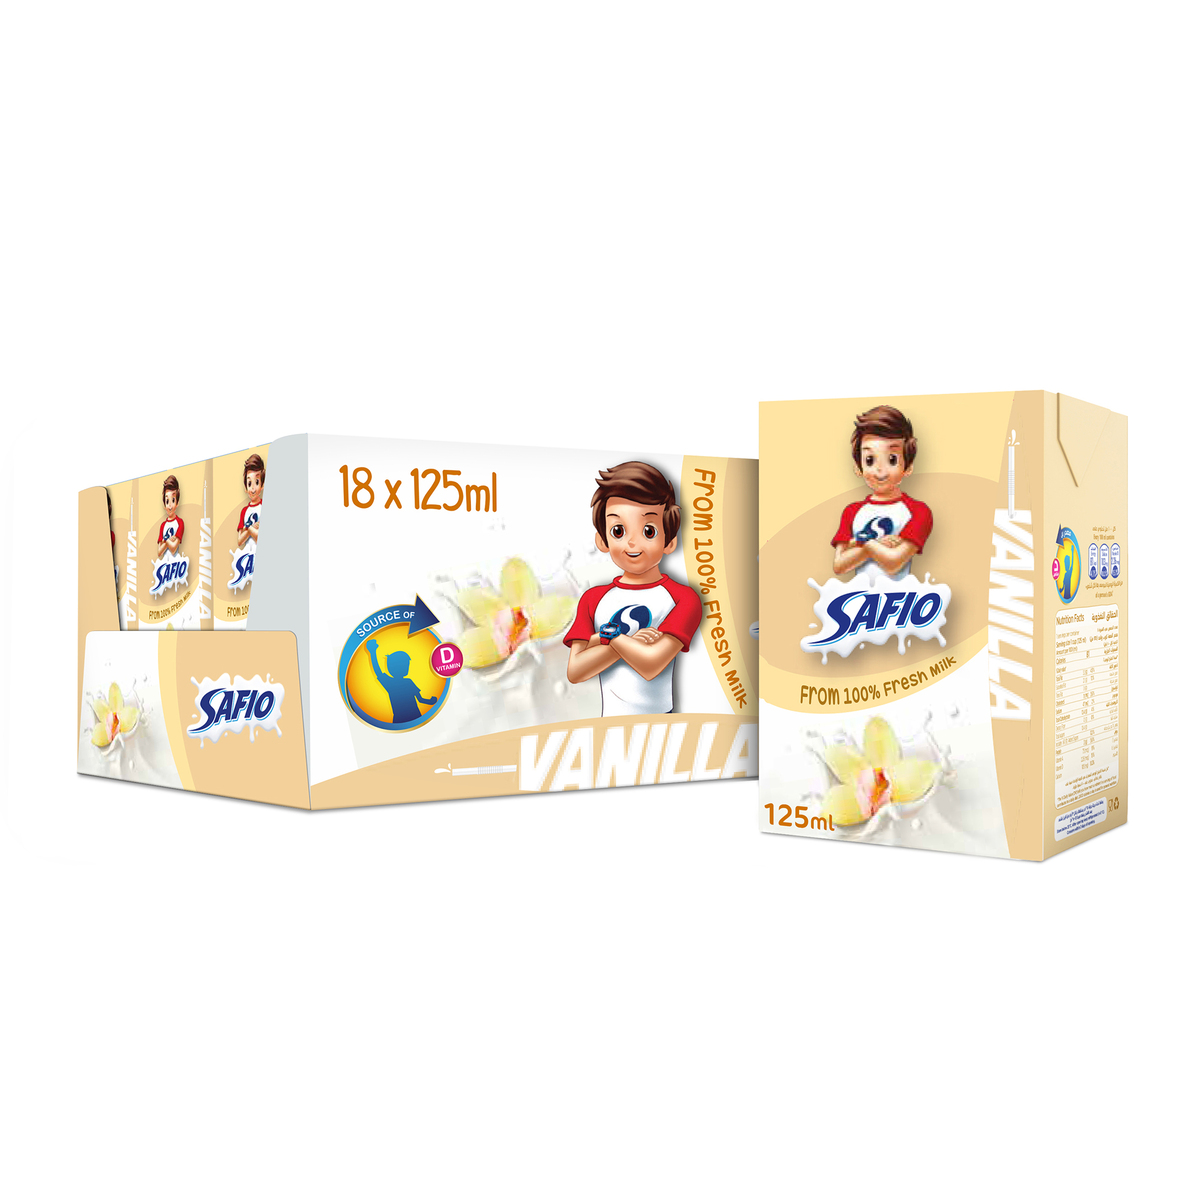 Safio UHT Milk Vanilla Flavor 125ml